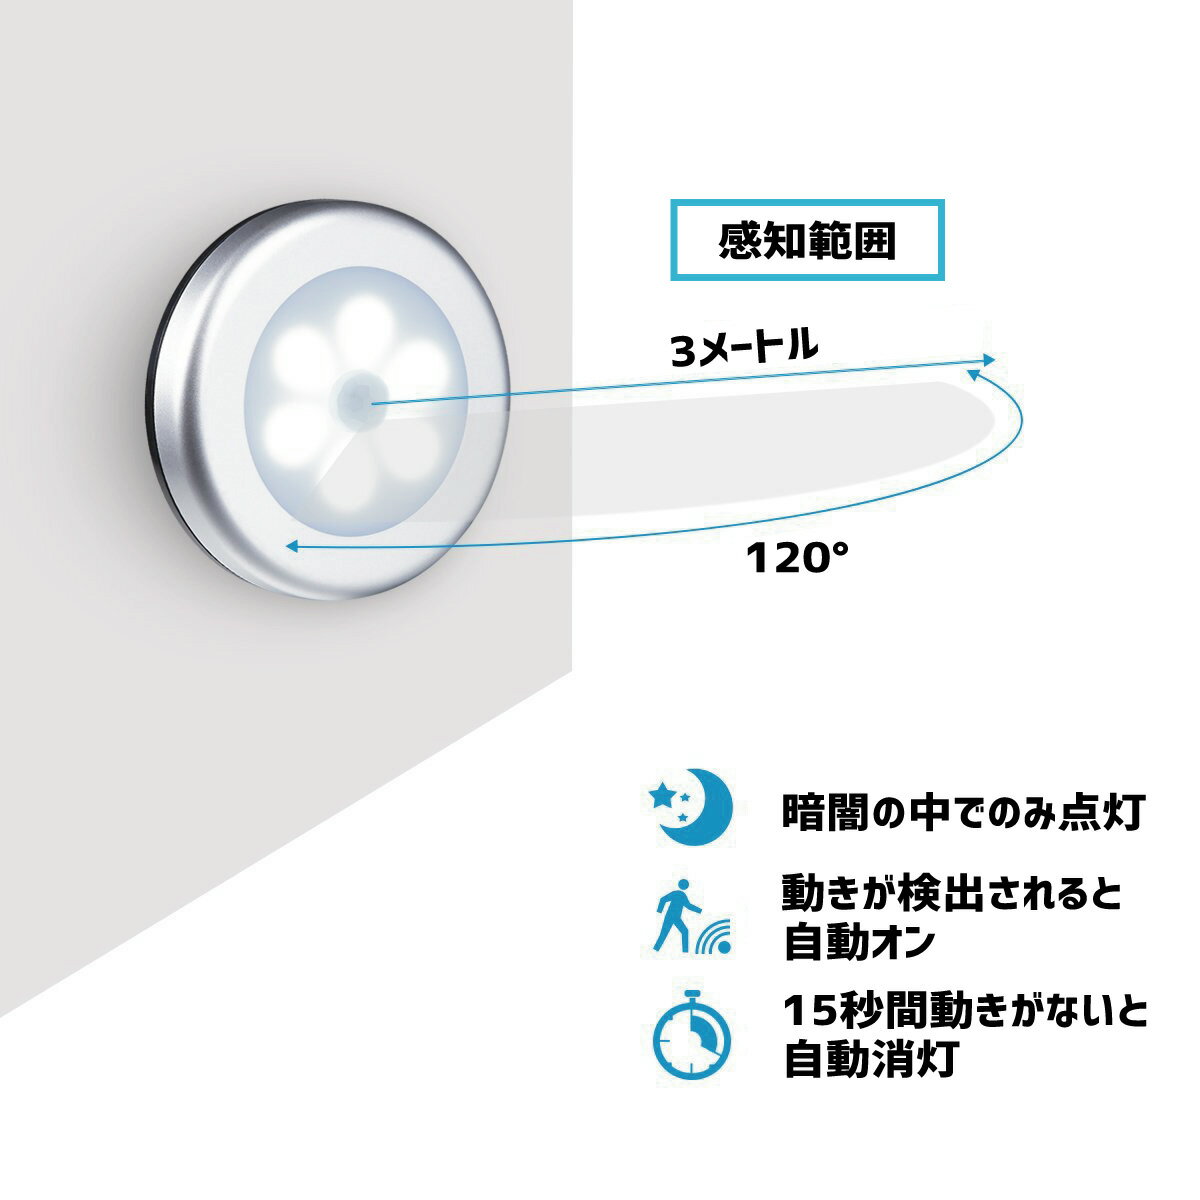 【全商品P2倍!】LEDセンサーライト 3個セット 人感センサー 乾電池式 マグネット 屋内専用